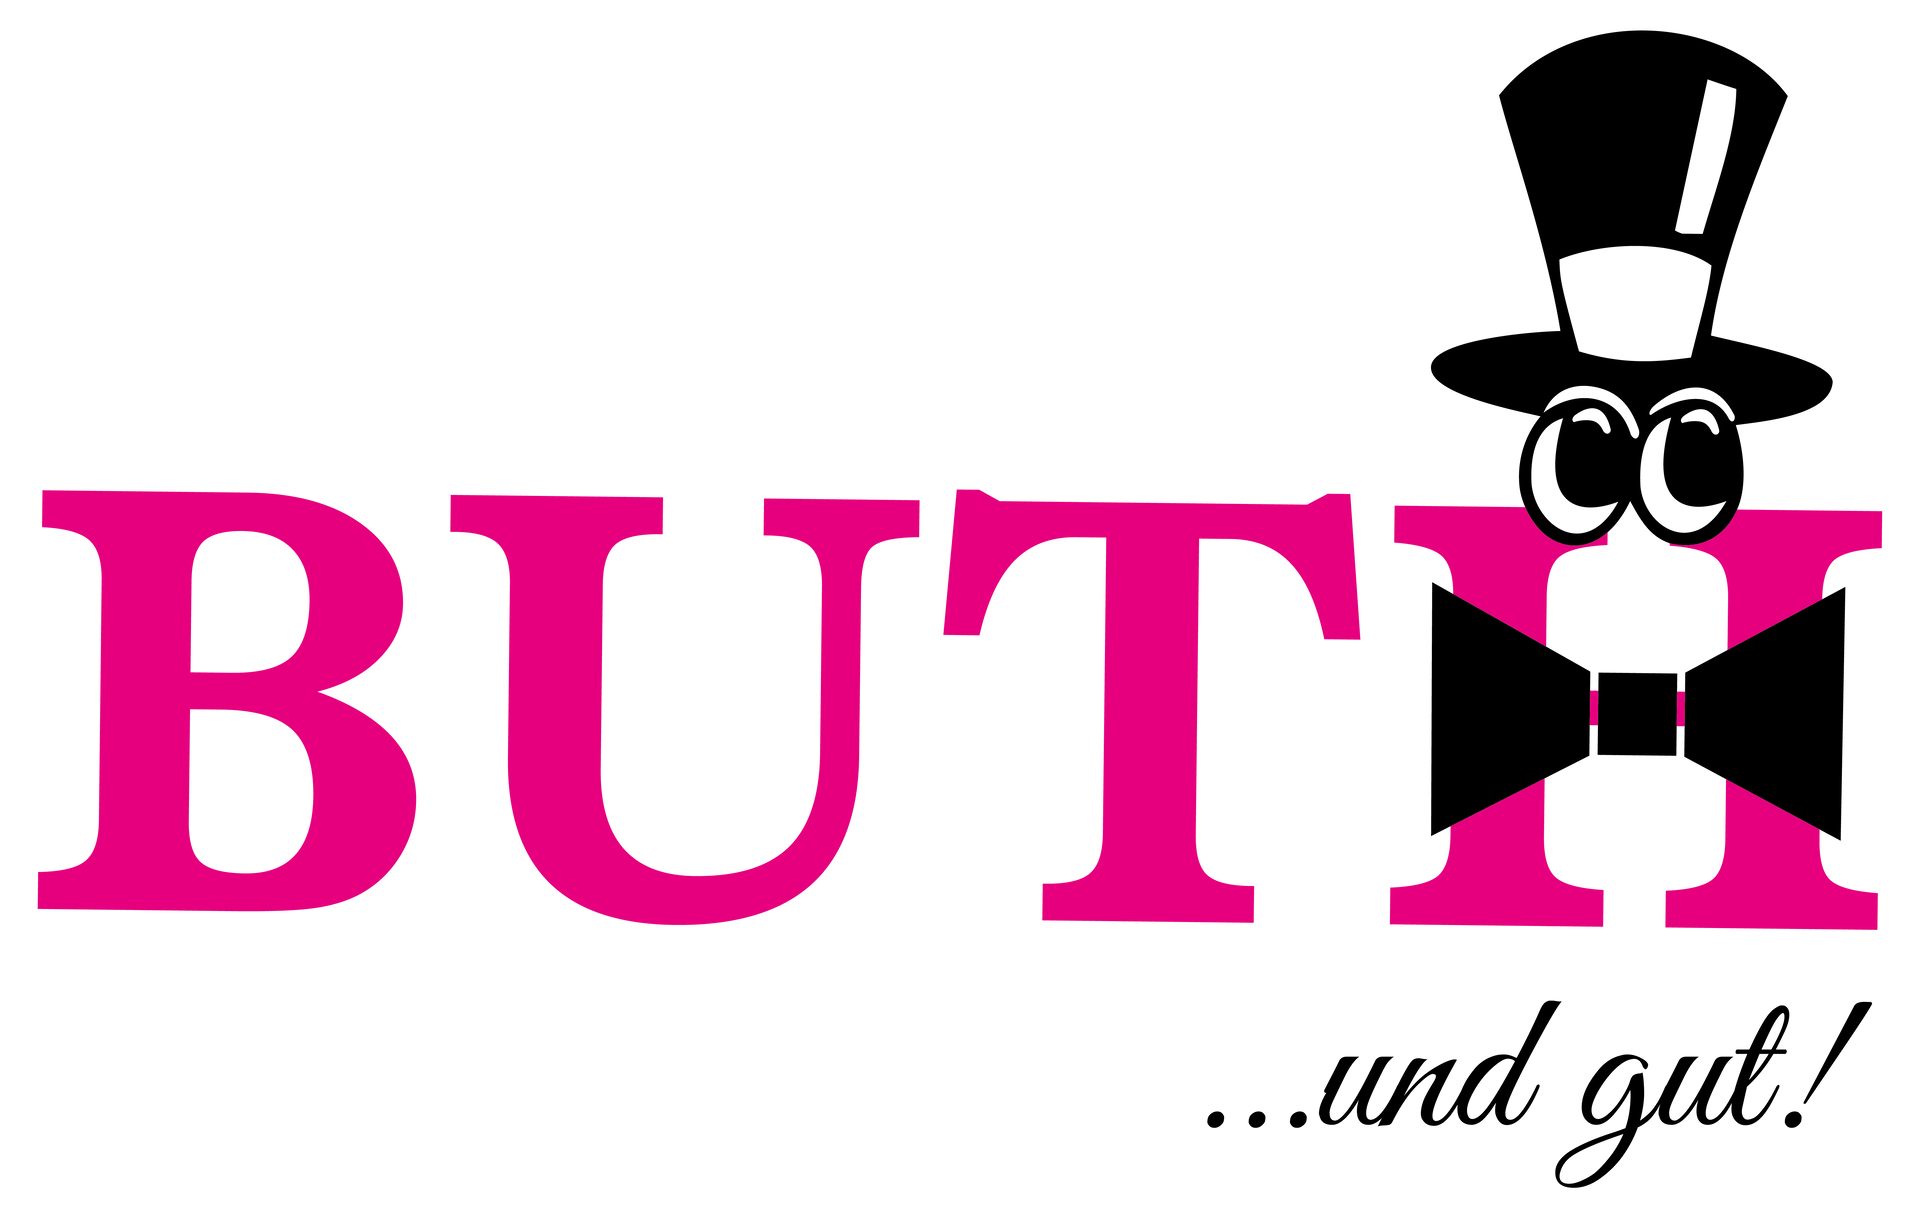 Buth Foehr Logo